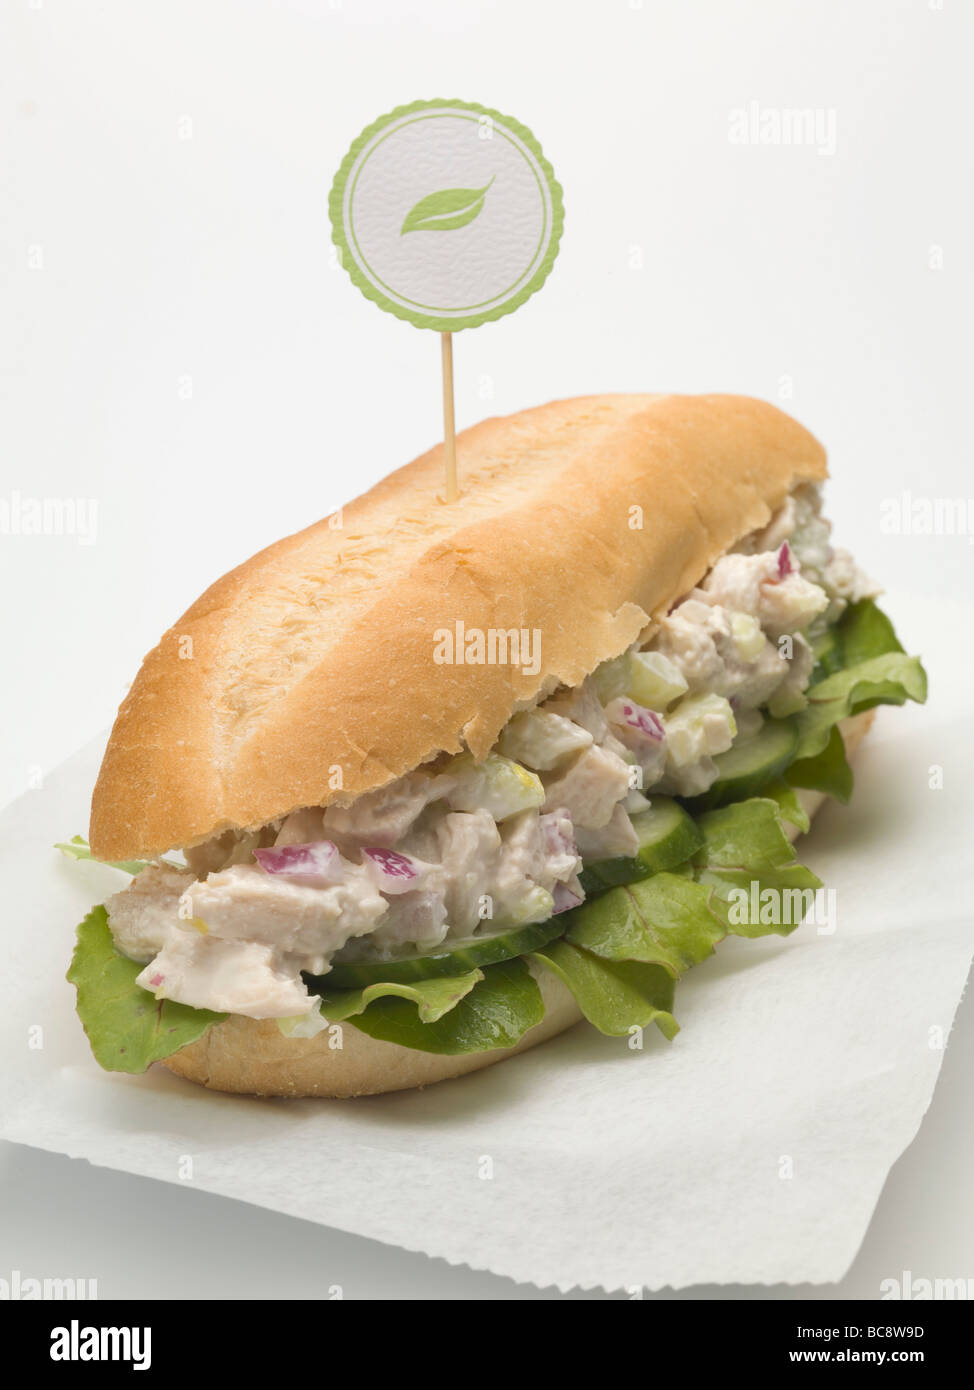 Insalata di pollo sandwich sub - Foto Stock